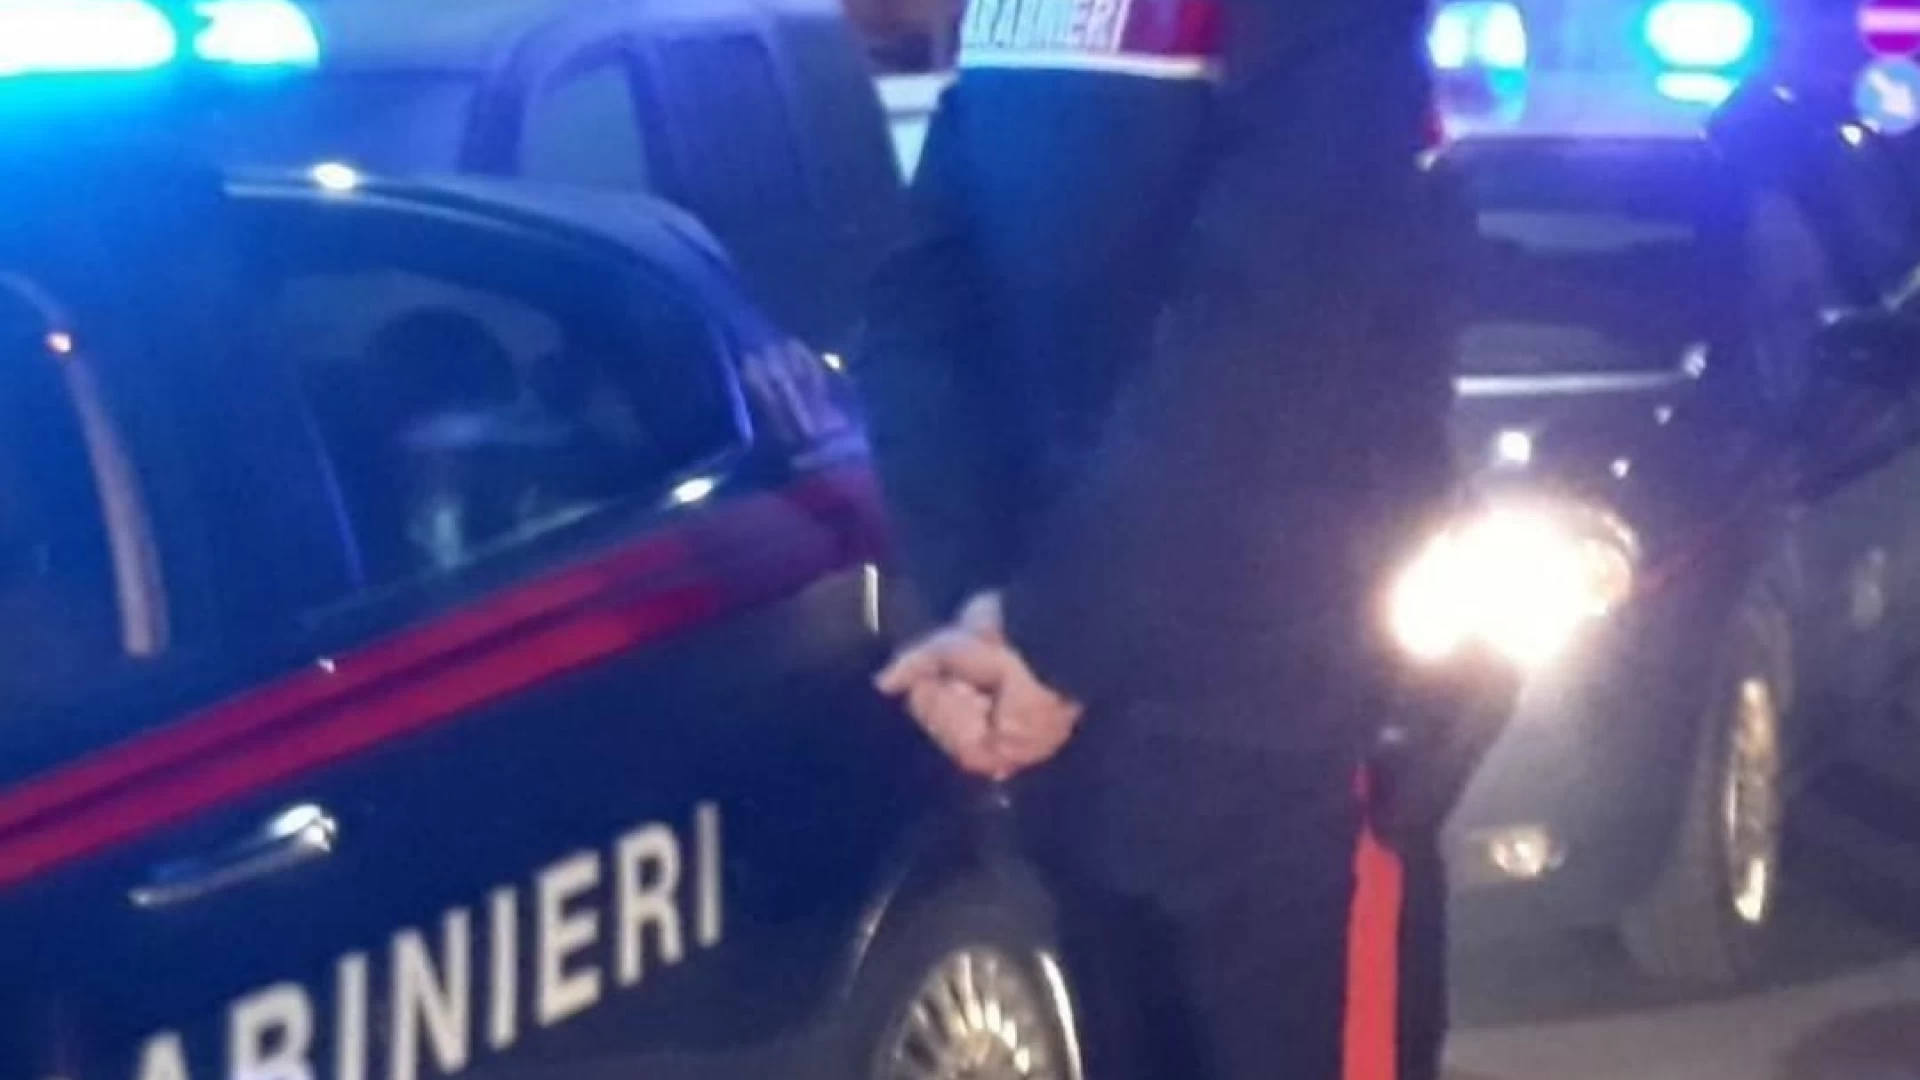 Isernia: I Carabinieri trovano una giovane donna in possesso di sostanza stupefacente.